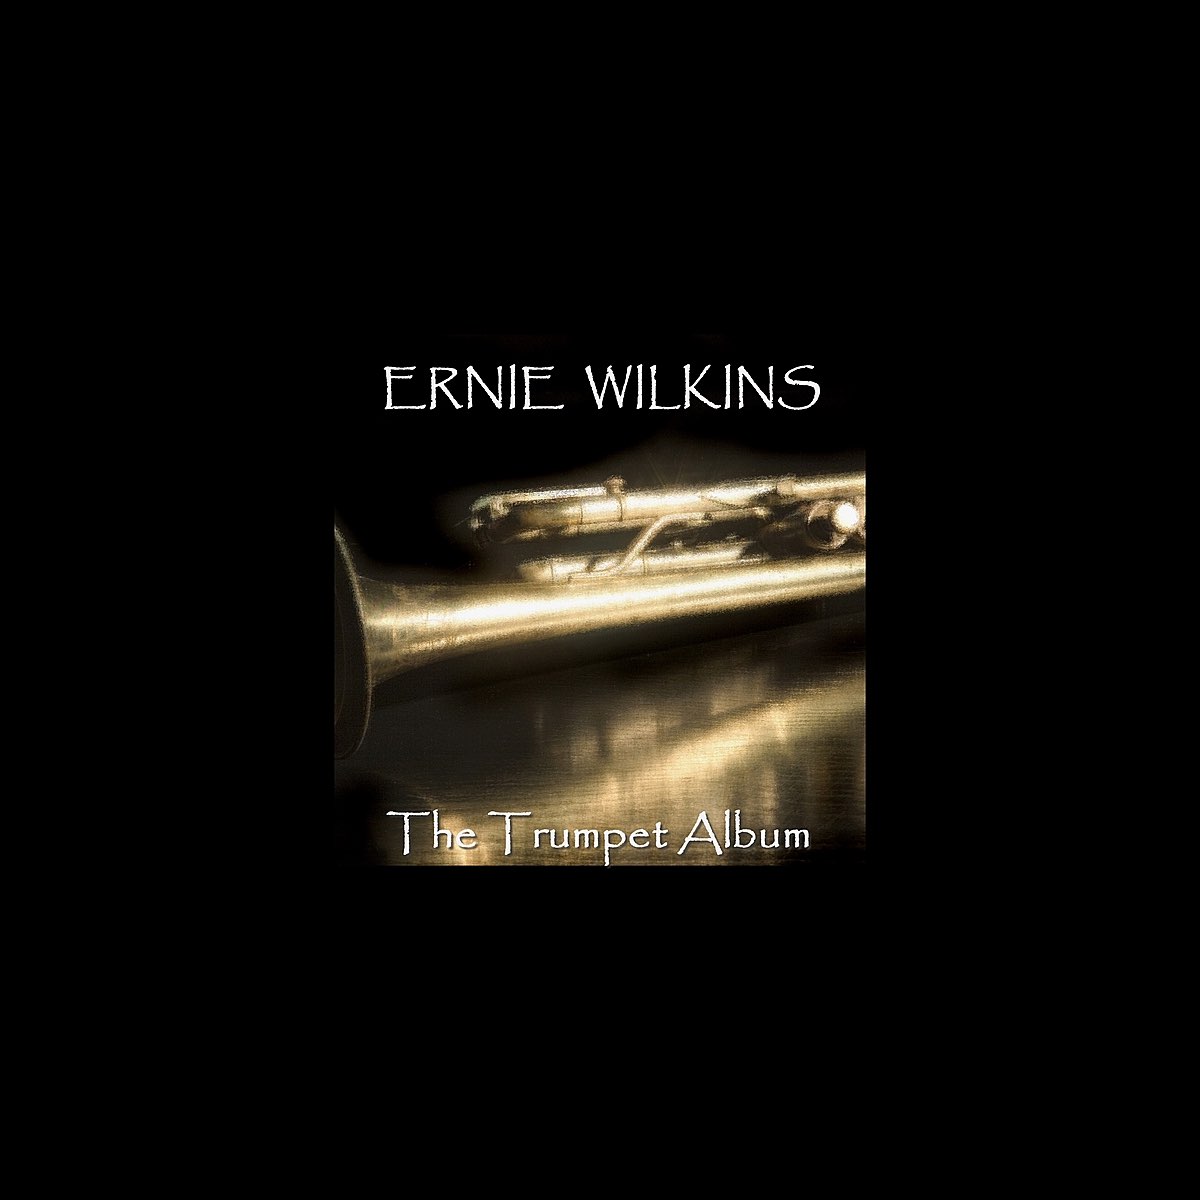 Ernie Wilkins – Top Brass Featuring Five Trumpets (1955, Vinyl